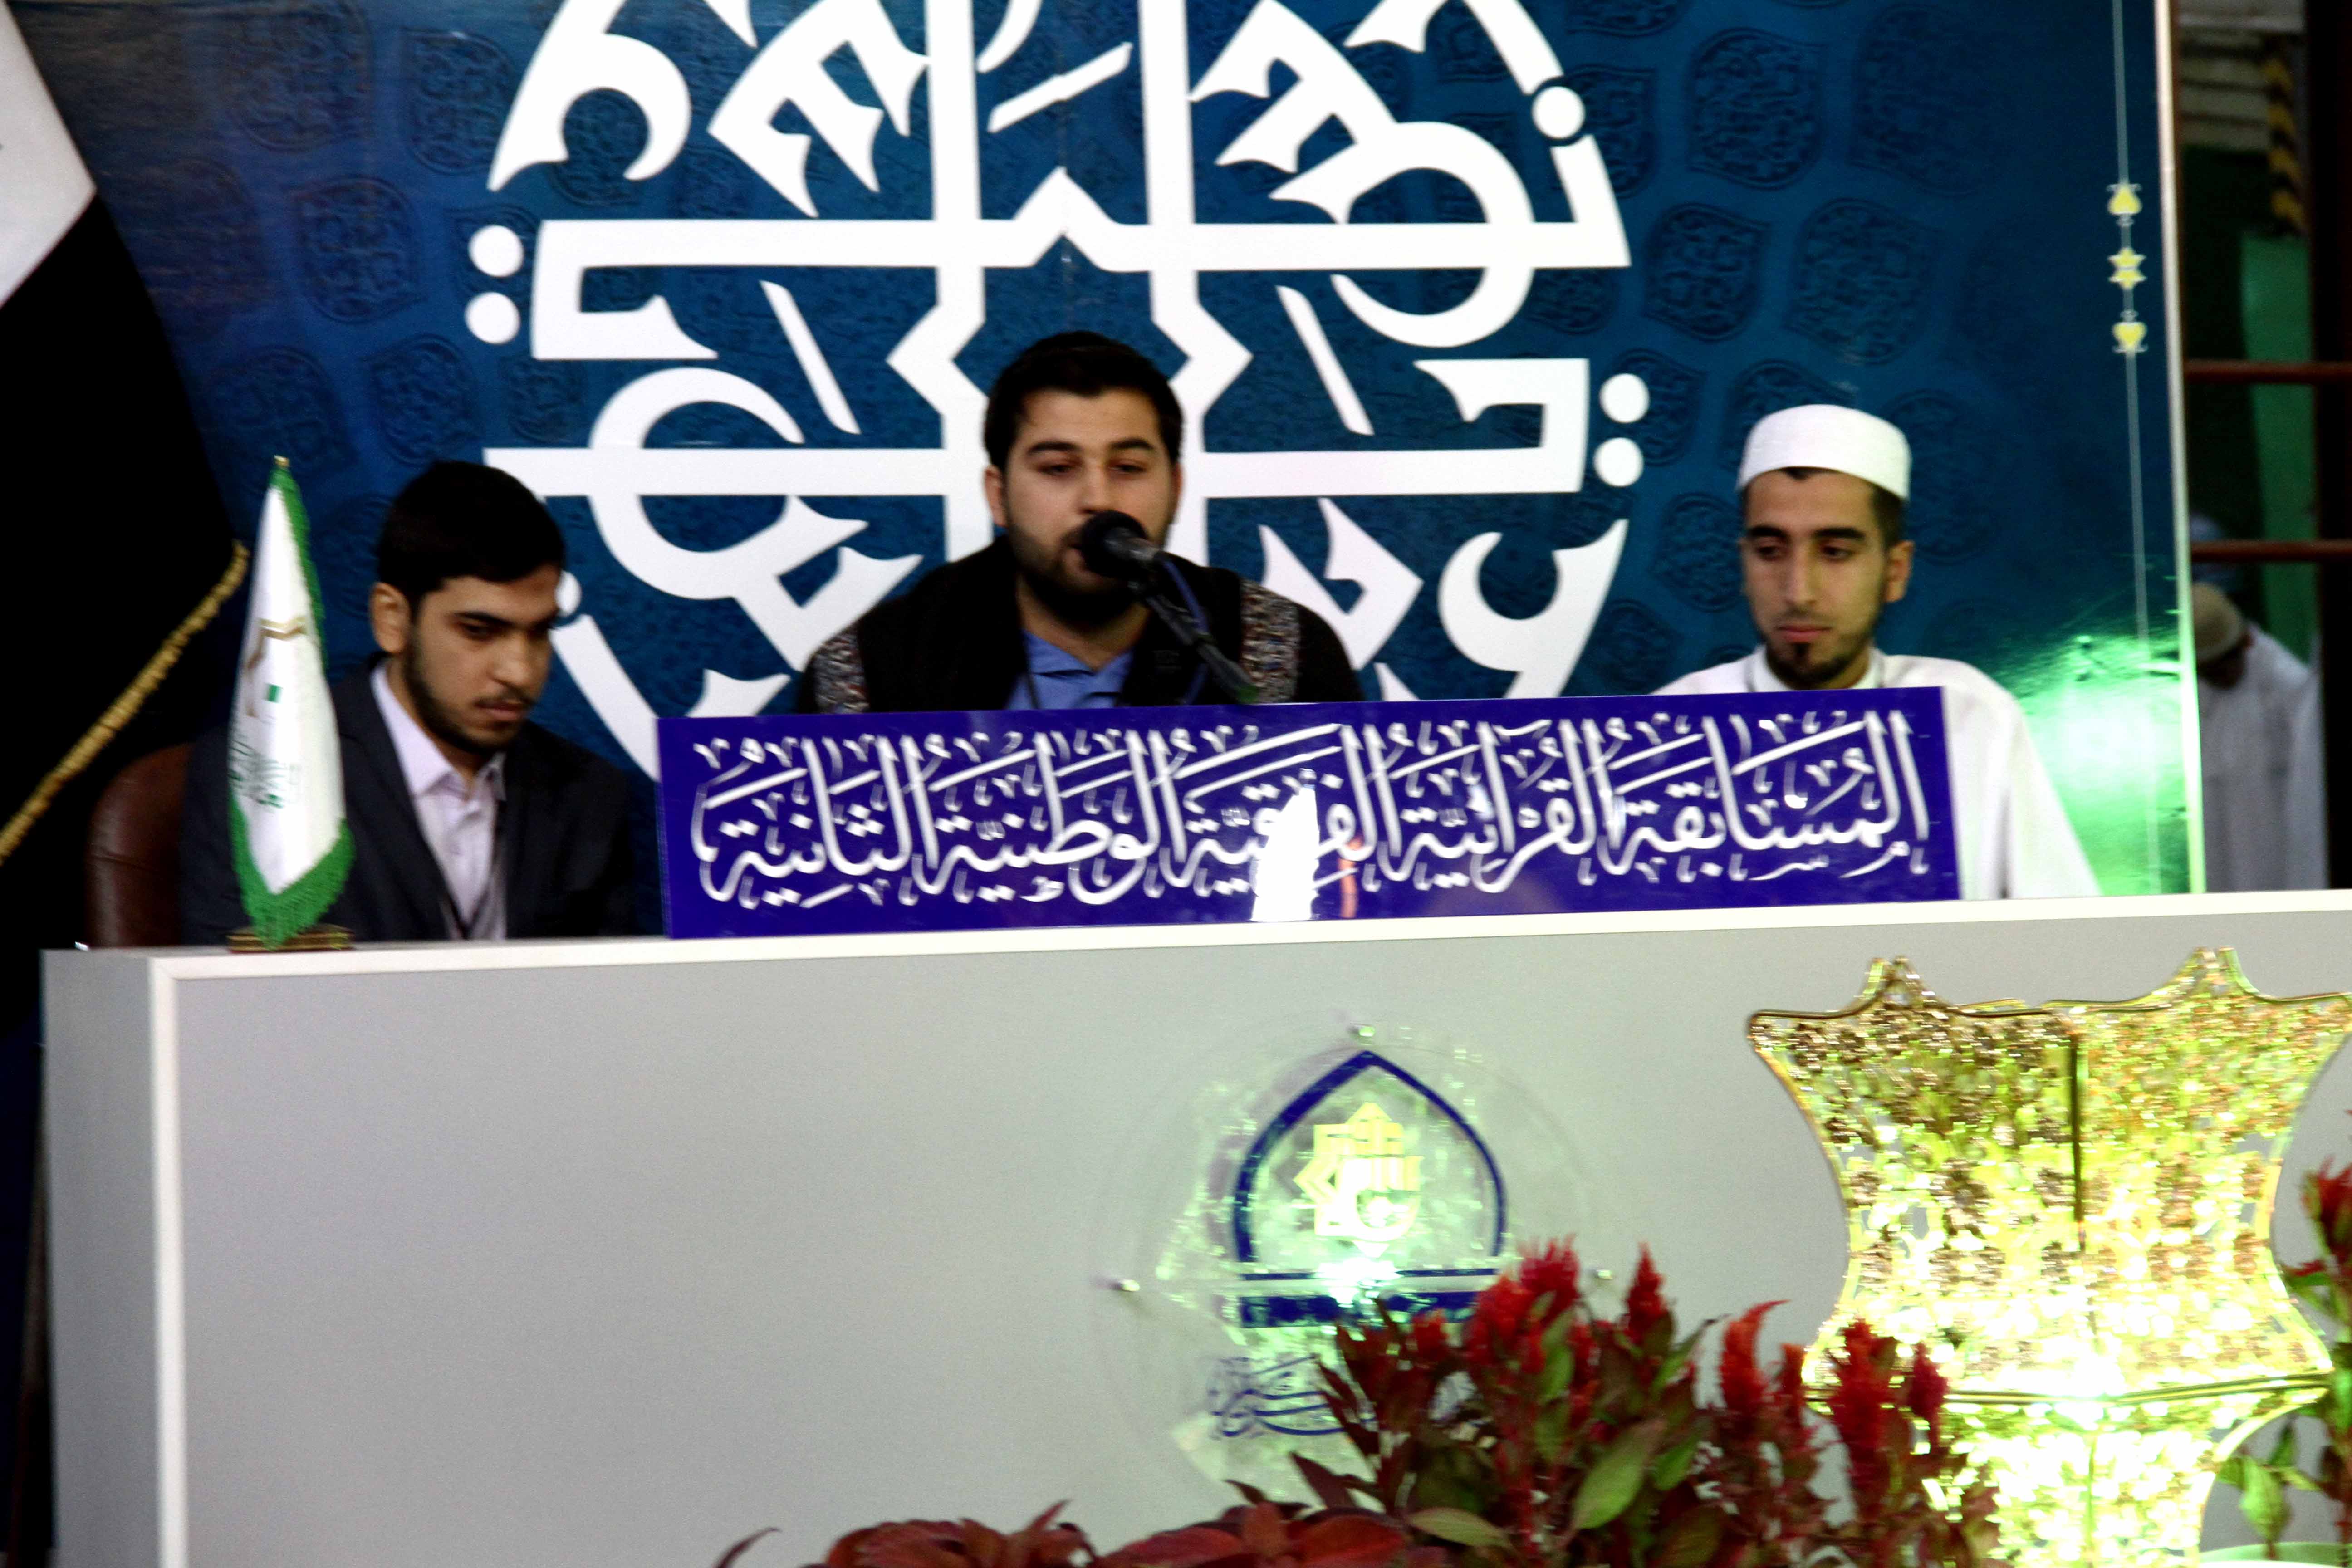 انطلاق المرحلة الثانية من المسابقة القرآنية الفرقية الوطنية الثانية بمشاركة (16) فريقاً اجتازوا المرحلة الأولى